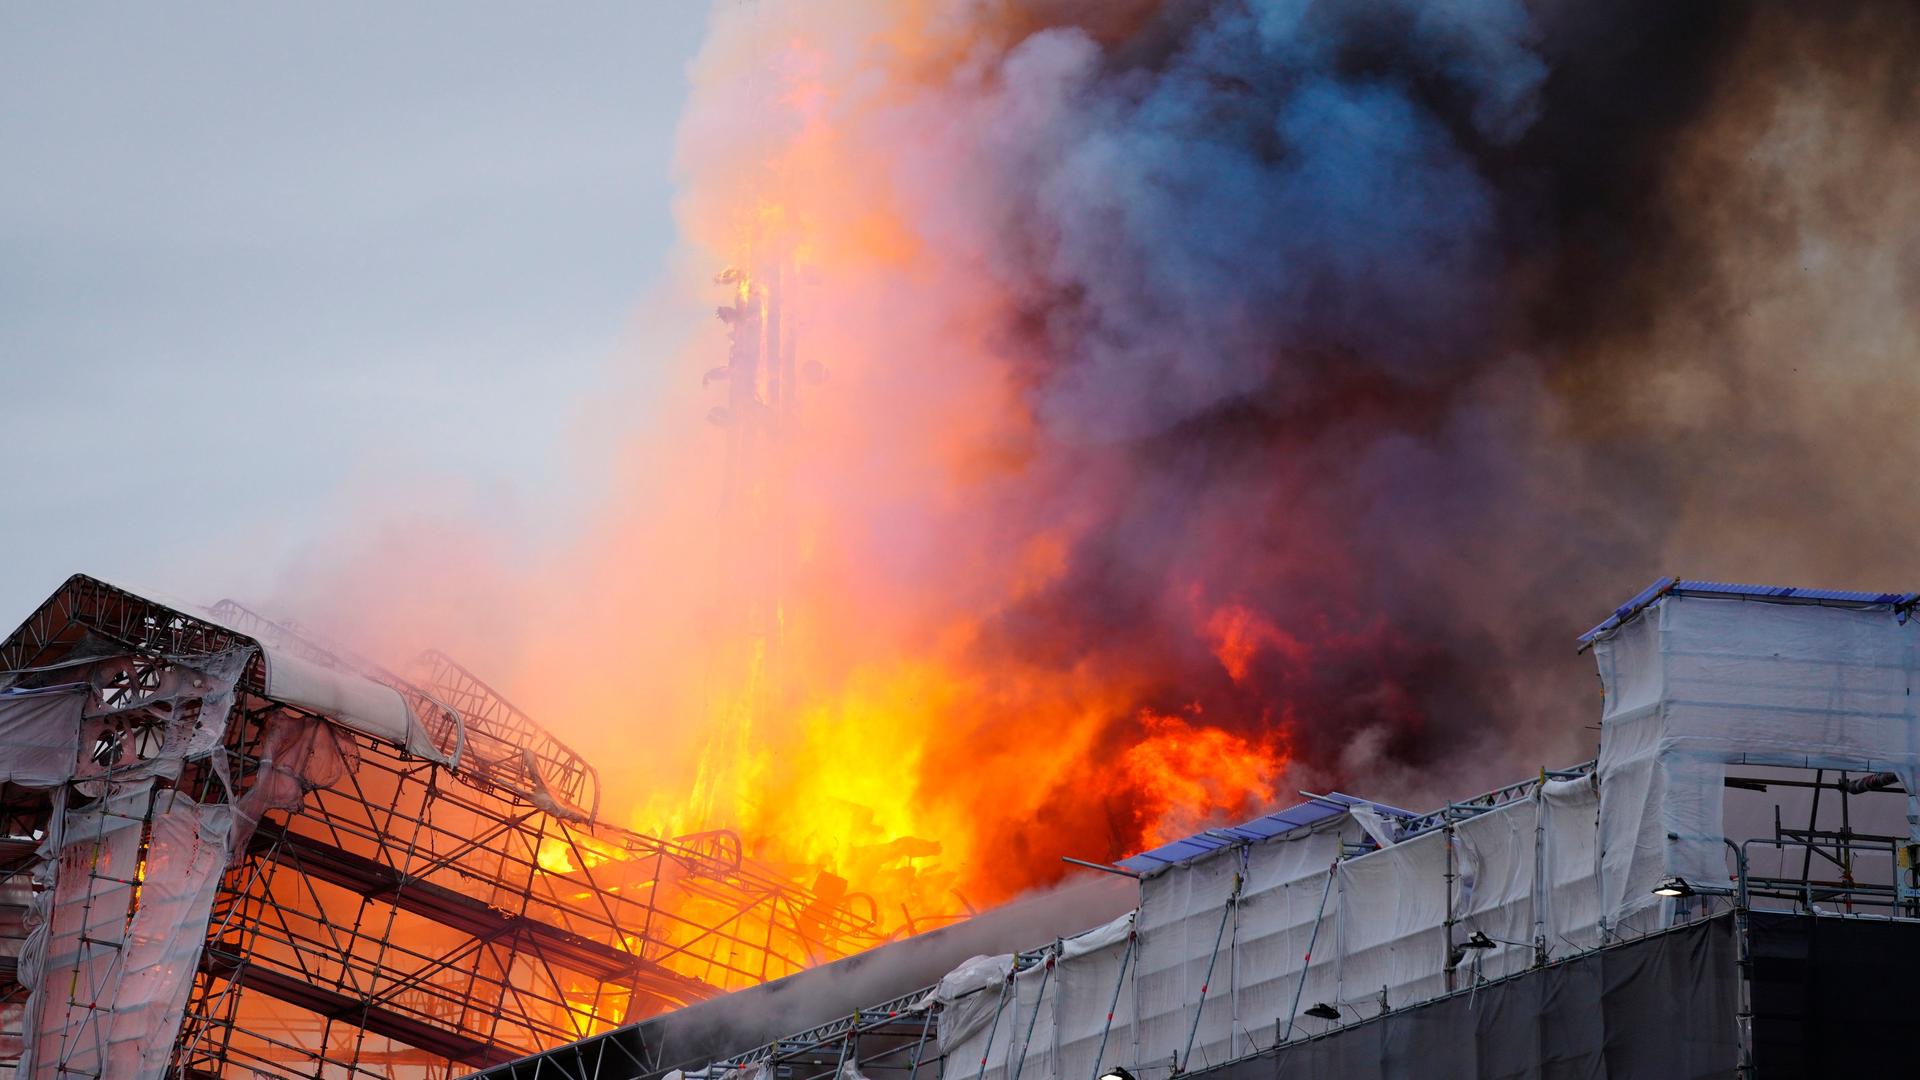 Dänemark, Kopenhagen: Feuer und Rauch steigen aus der Alten Börse, "Boersen" bei einem Brand.